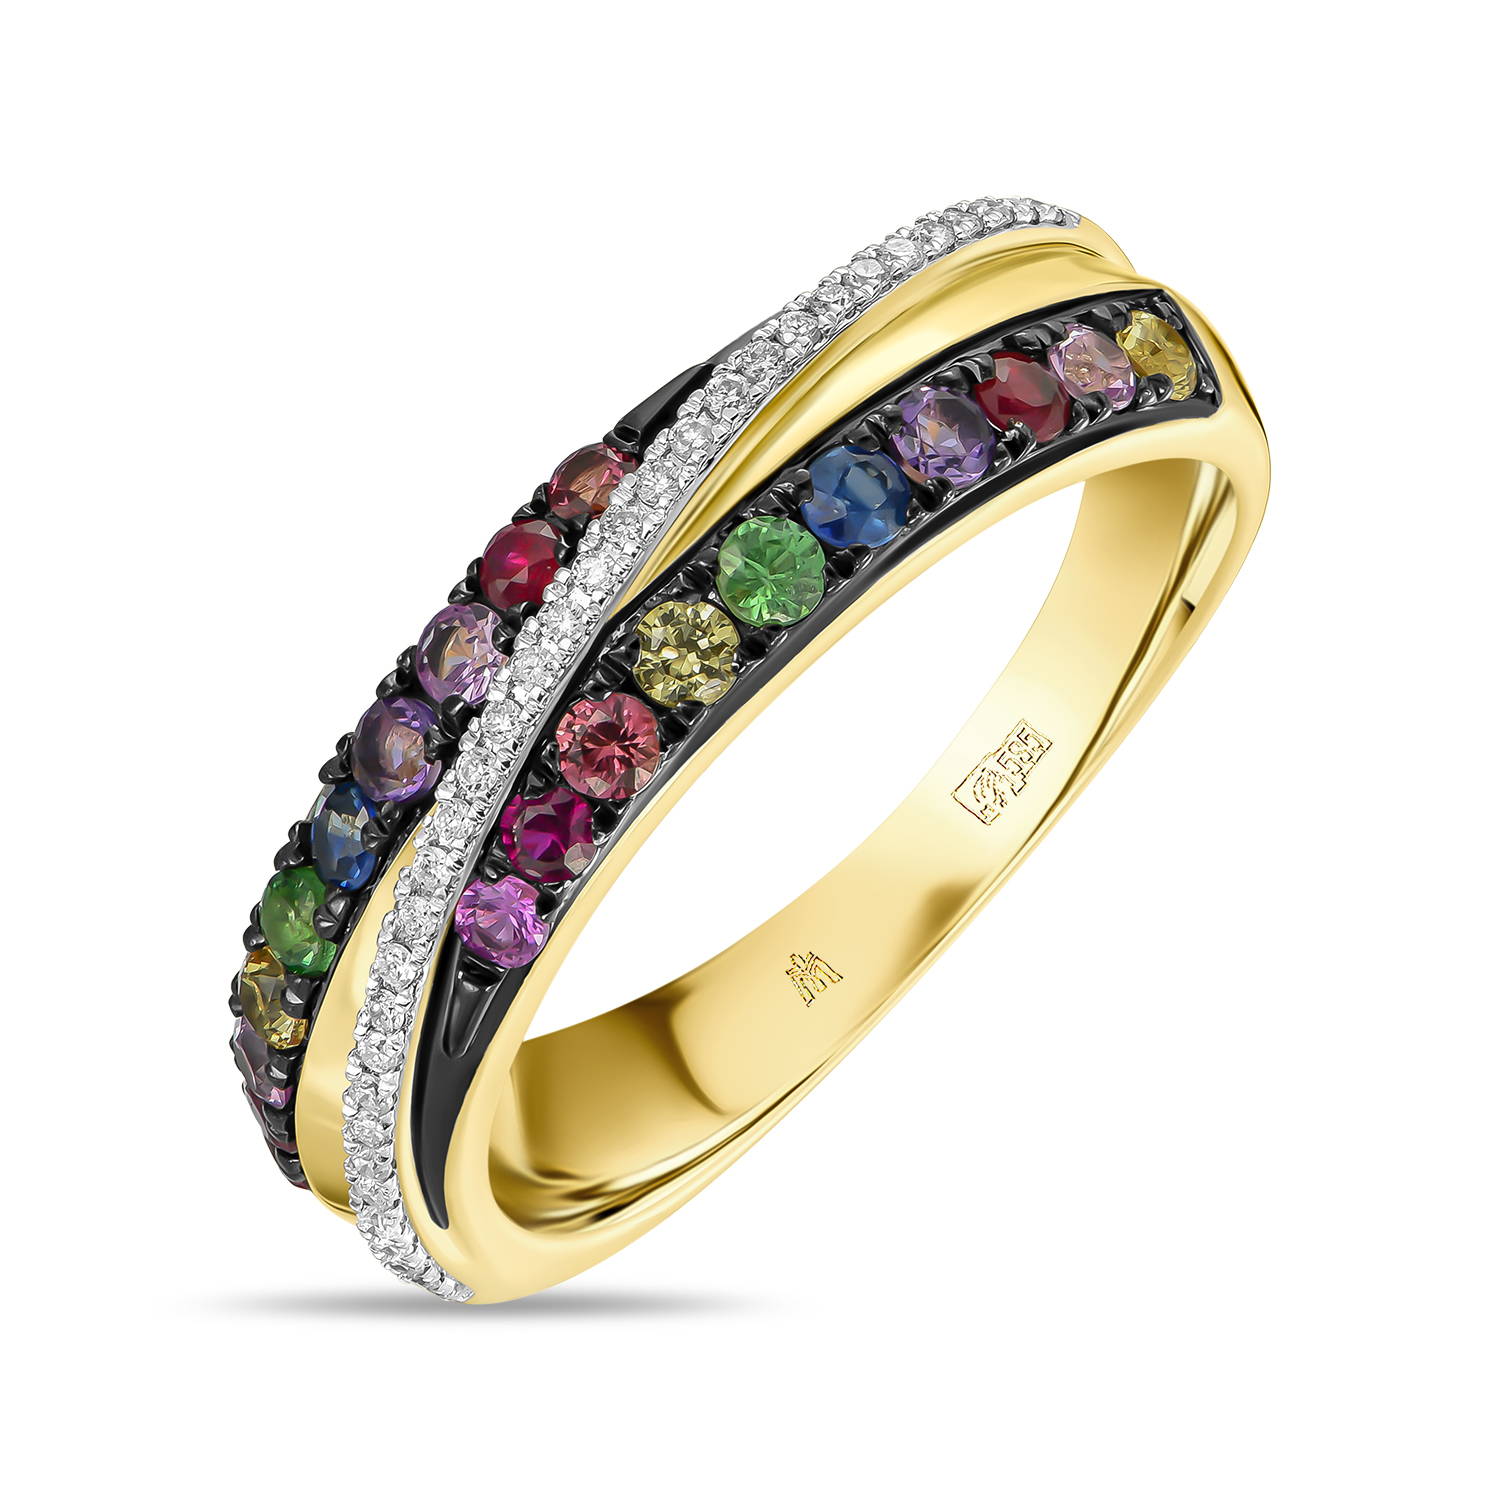 Кольца МЮЗ Кольцо с аметистами, бриллиантами, гранатами, рубинами и цветными сапфирами